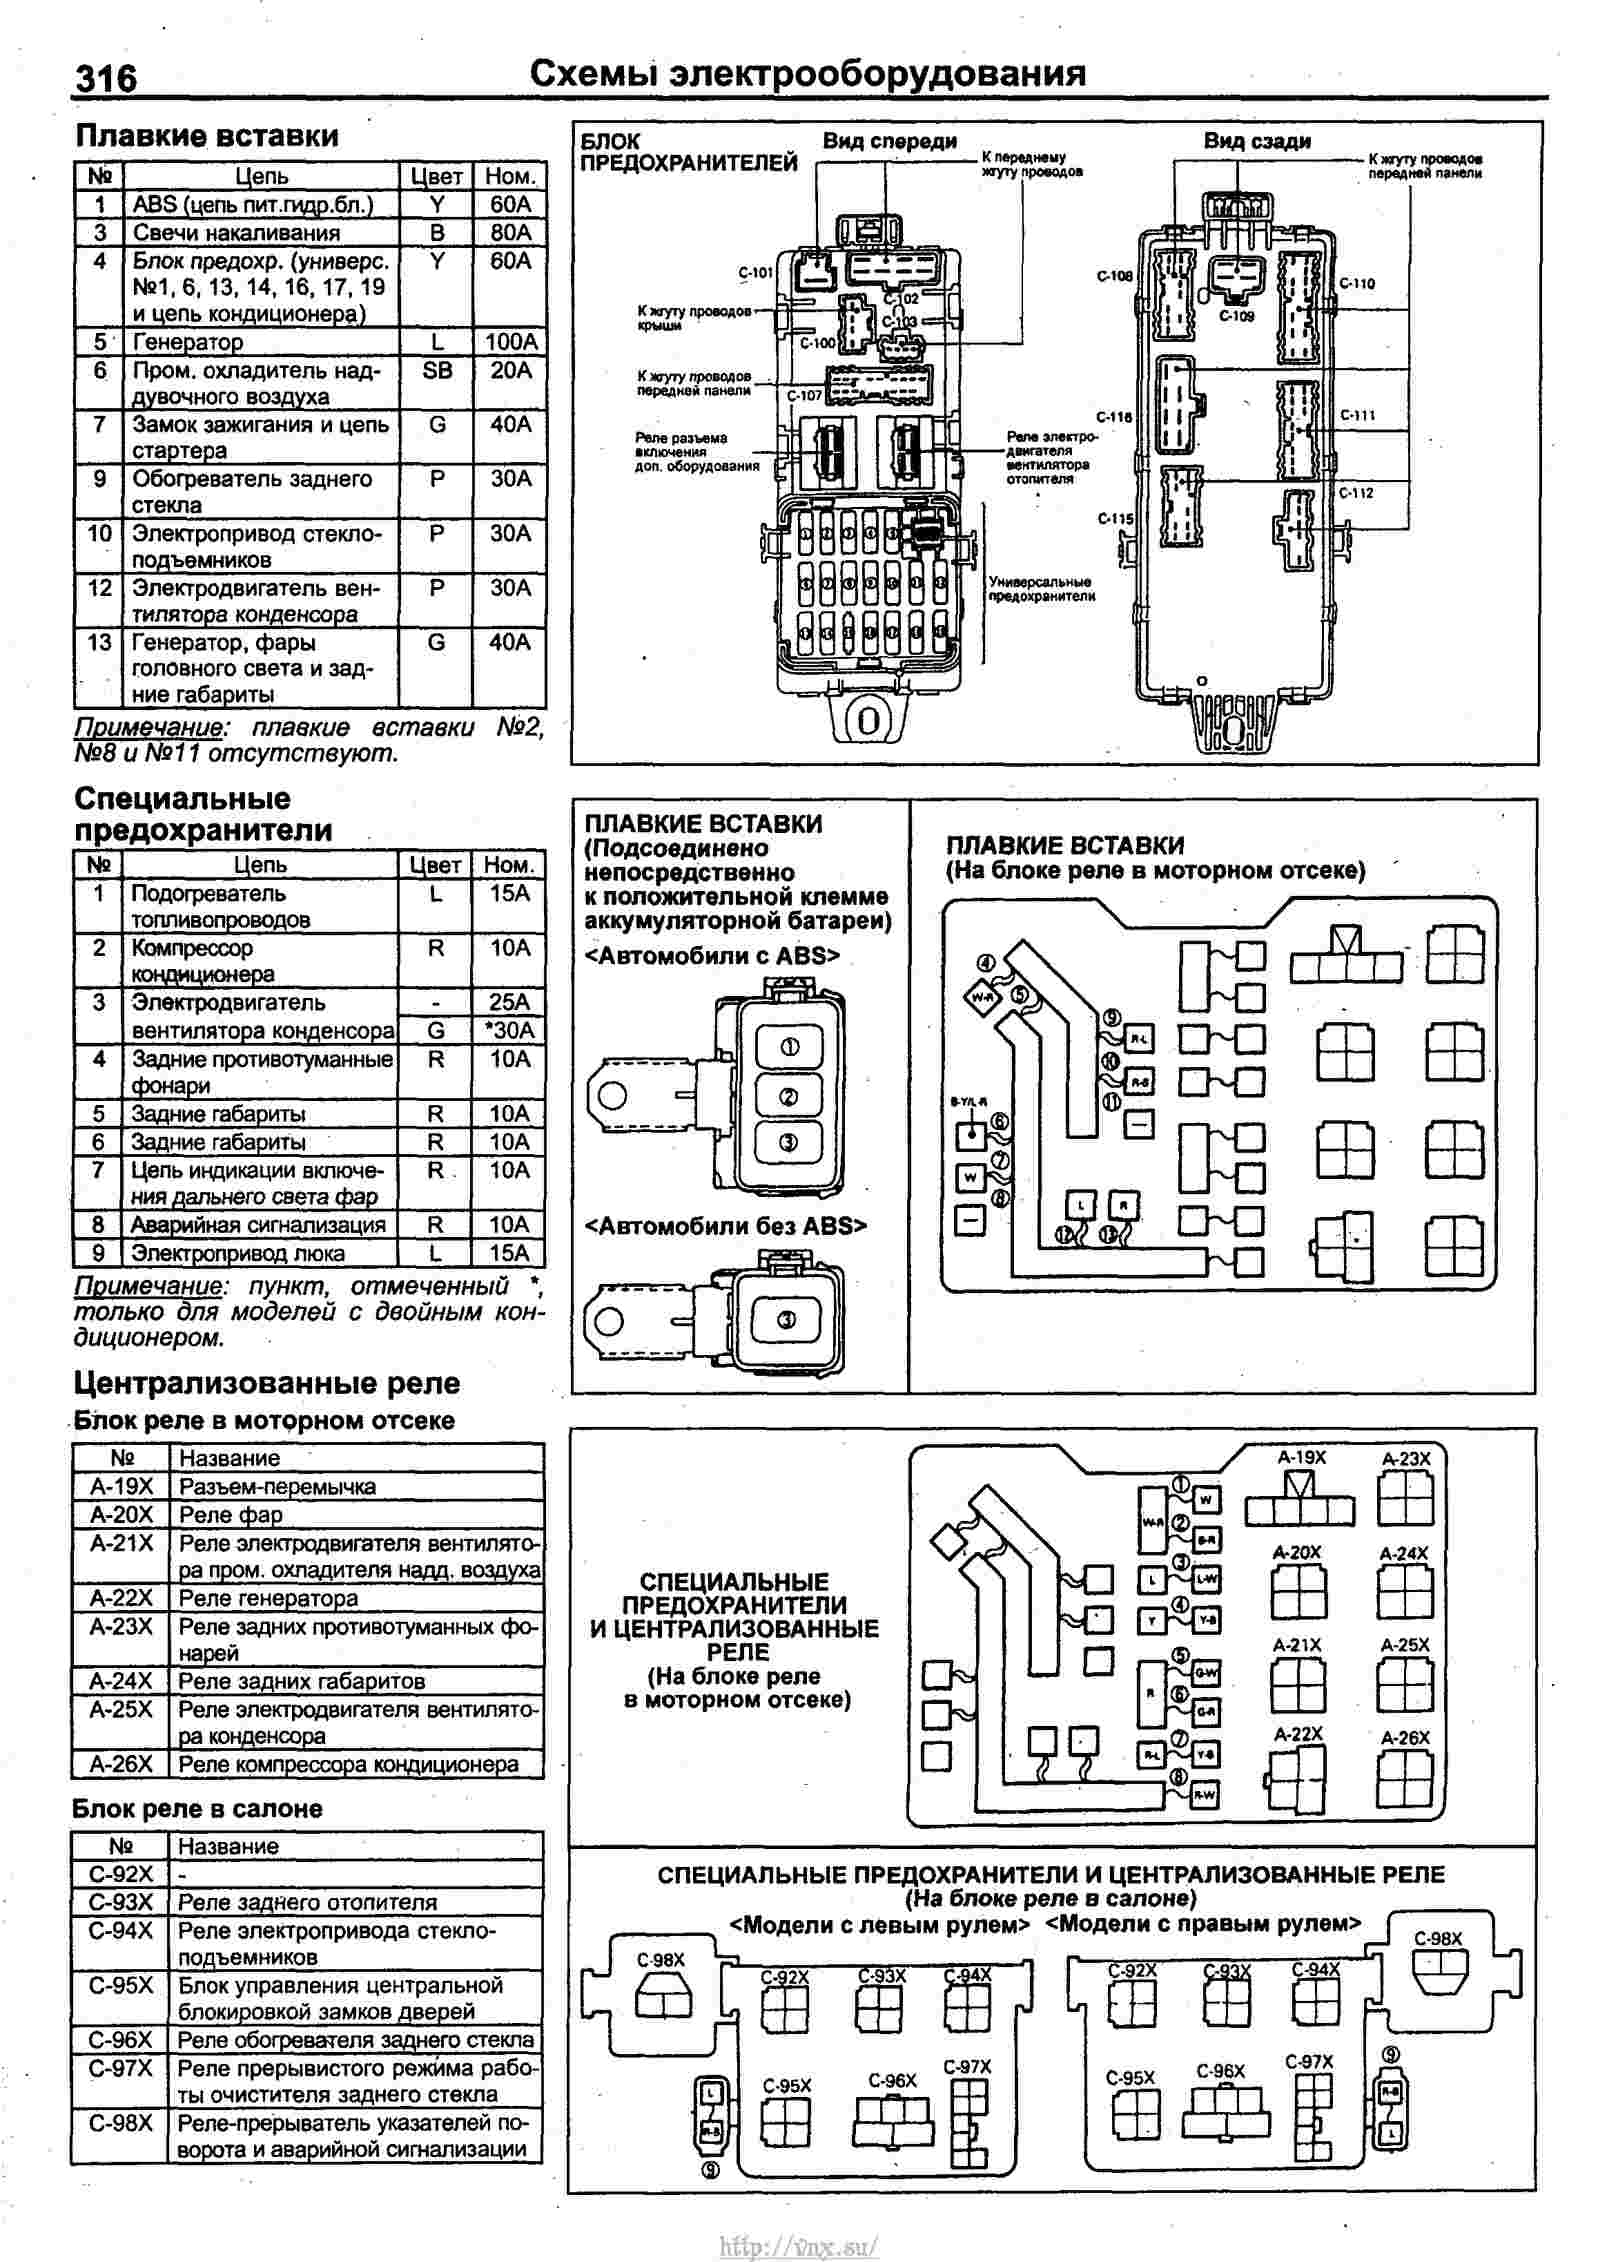 Назначение предохранителей и реле Mitsubishi Mirage 4 и 5 поколения со схемами блоков и местами расположения Предохранитель прикуривателя